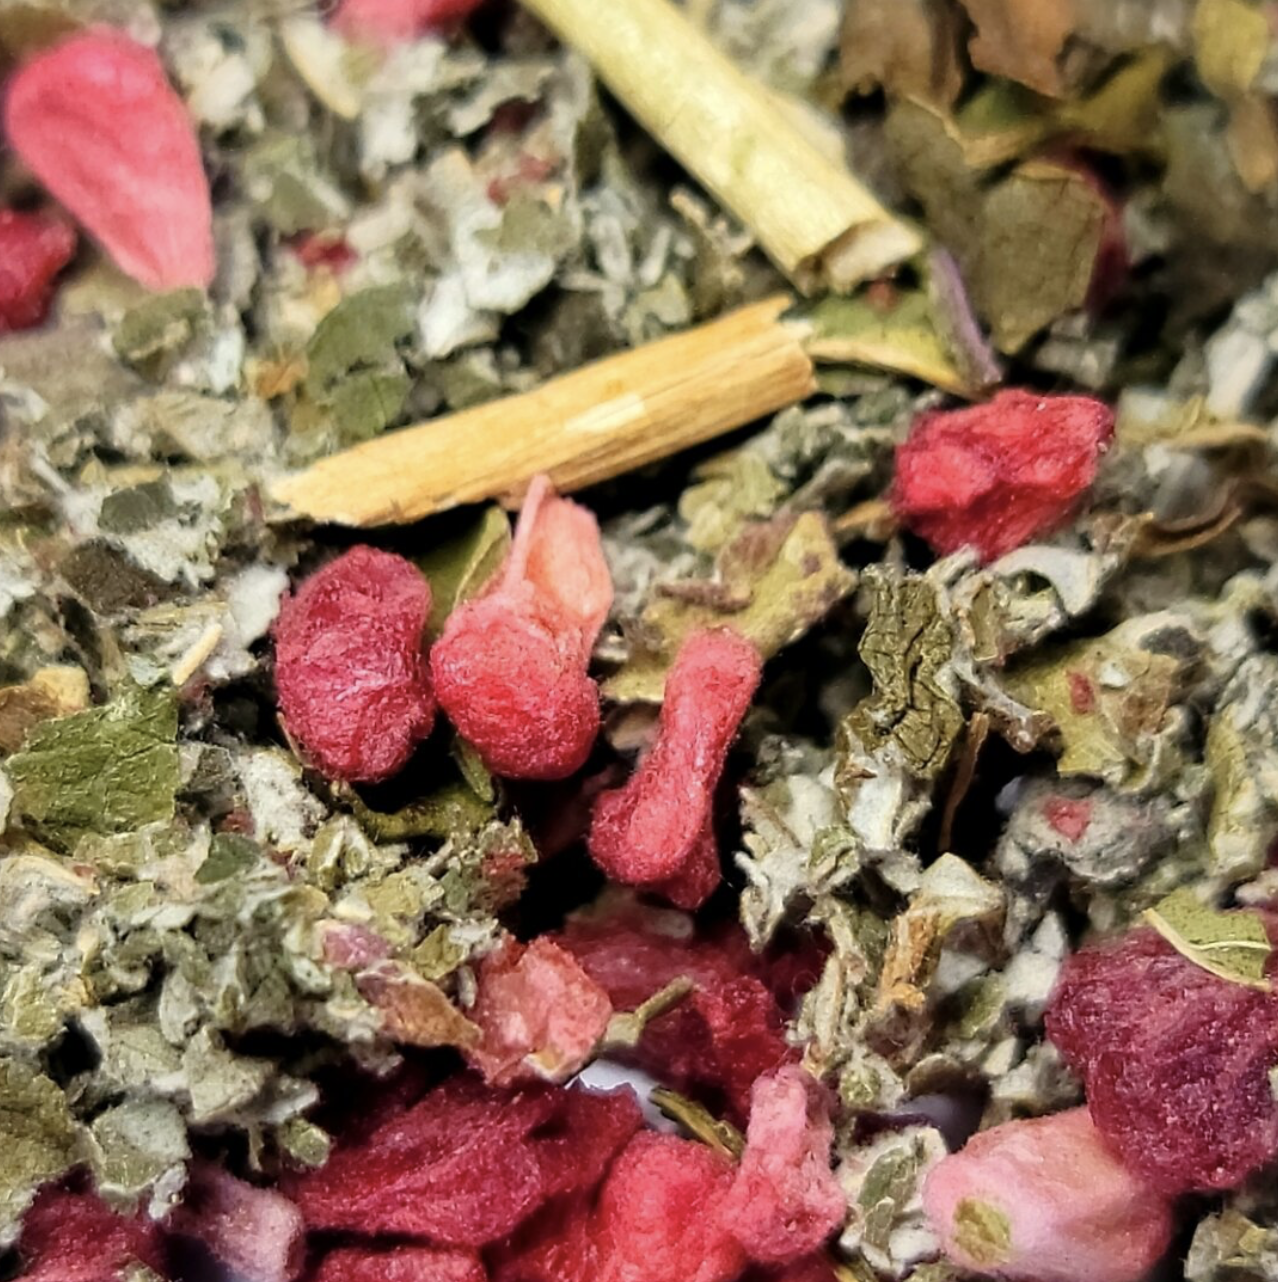 Razzlemint Herbal Tea